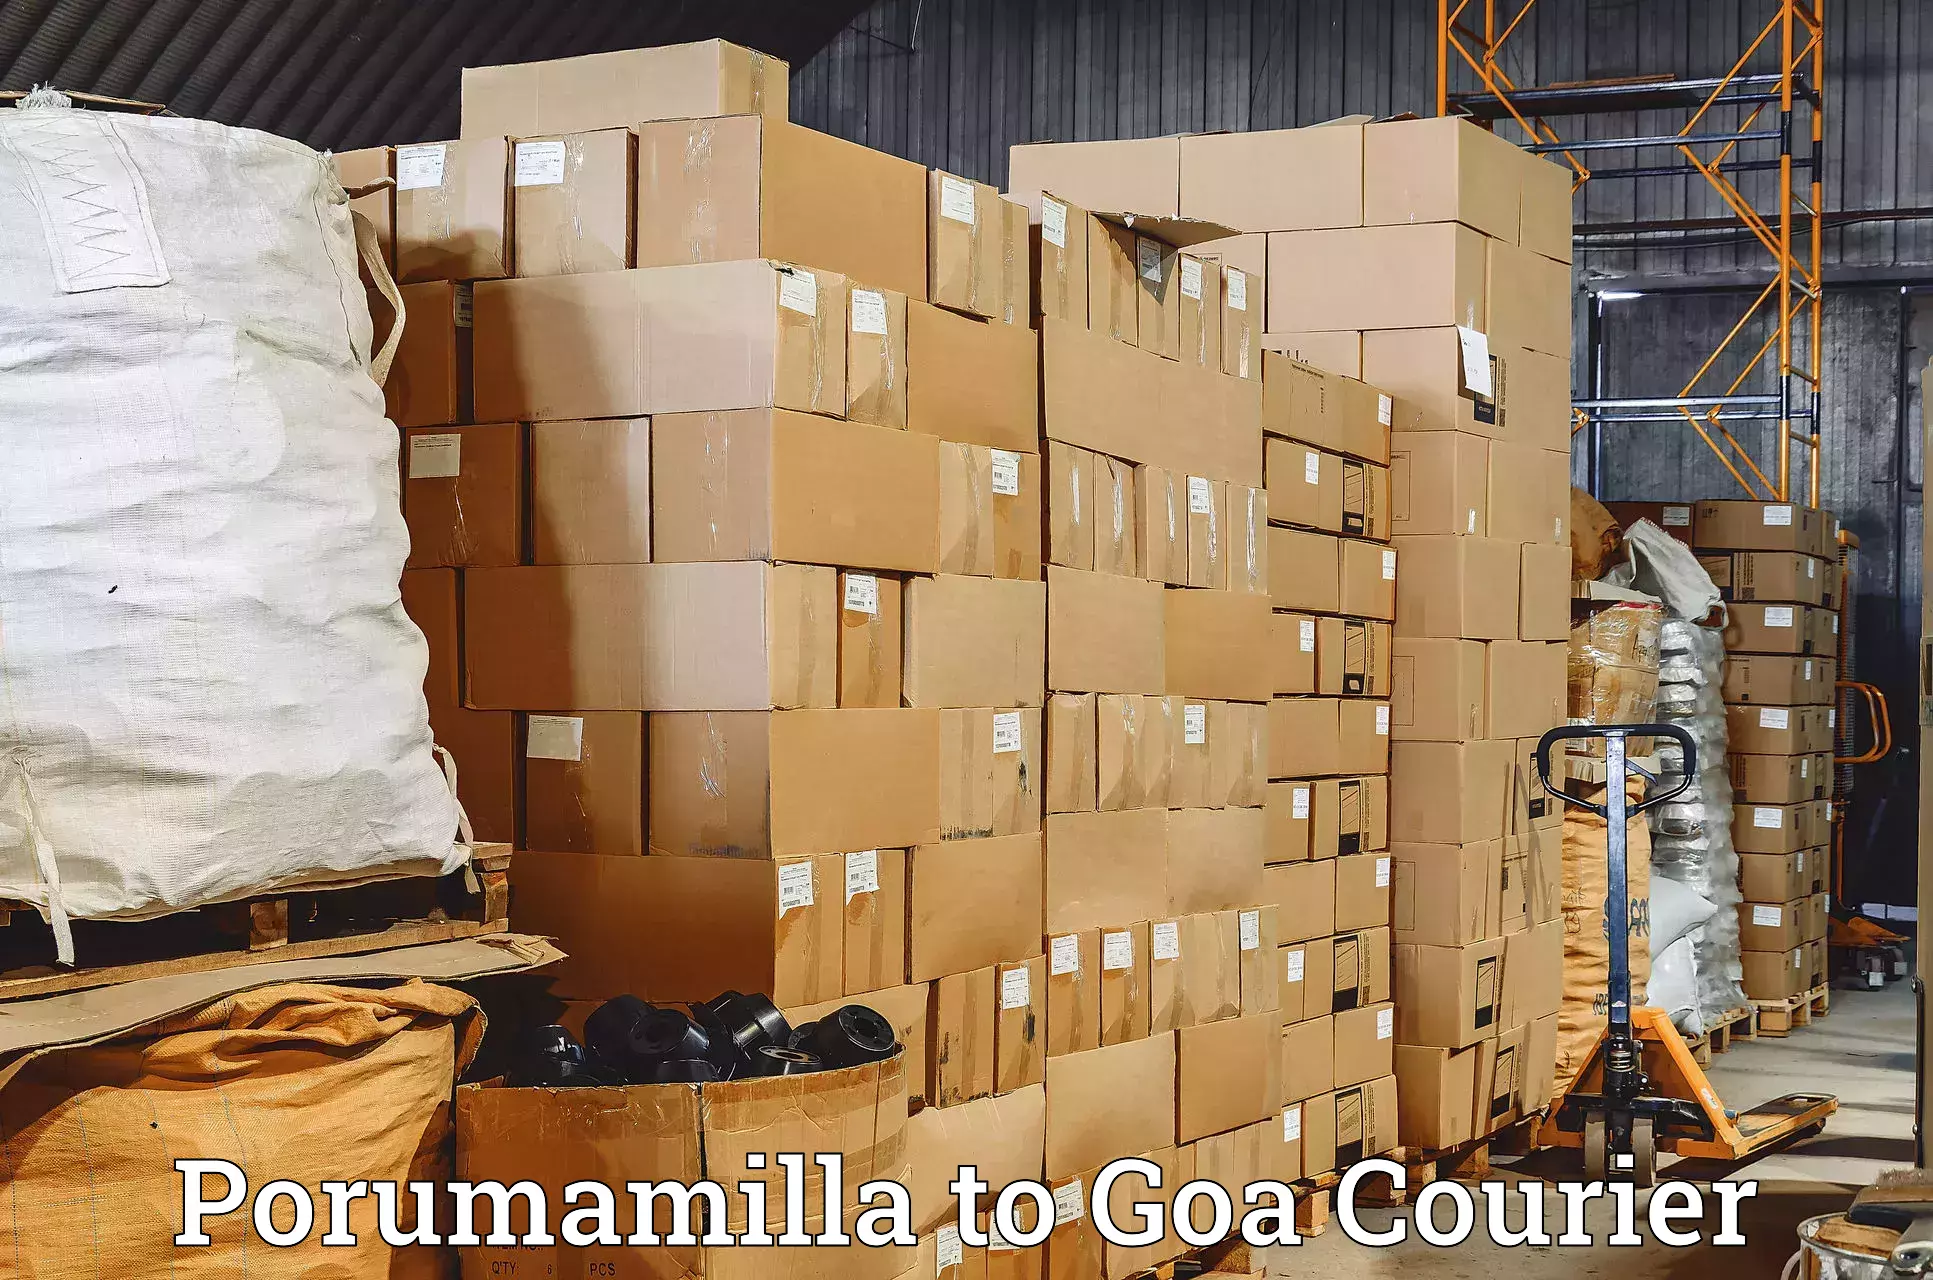 User-friendly delivery service Porumamilla to Vasco da Gama